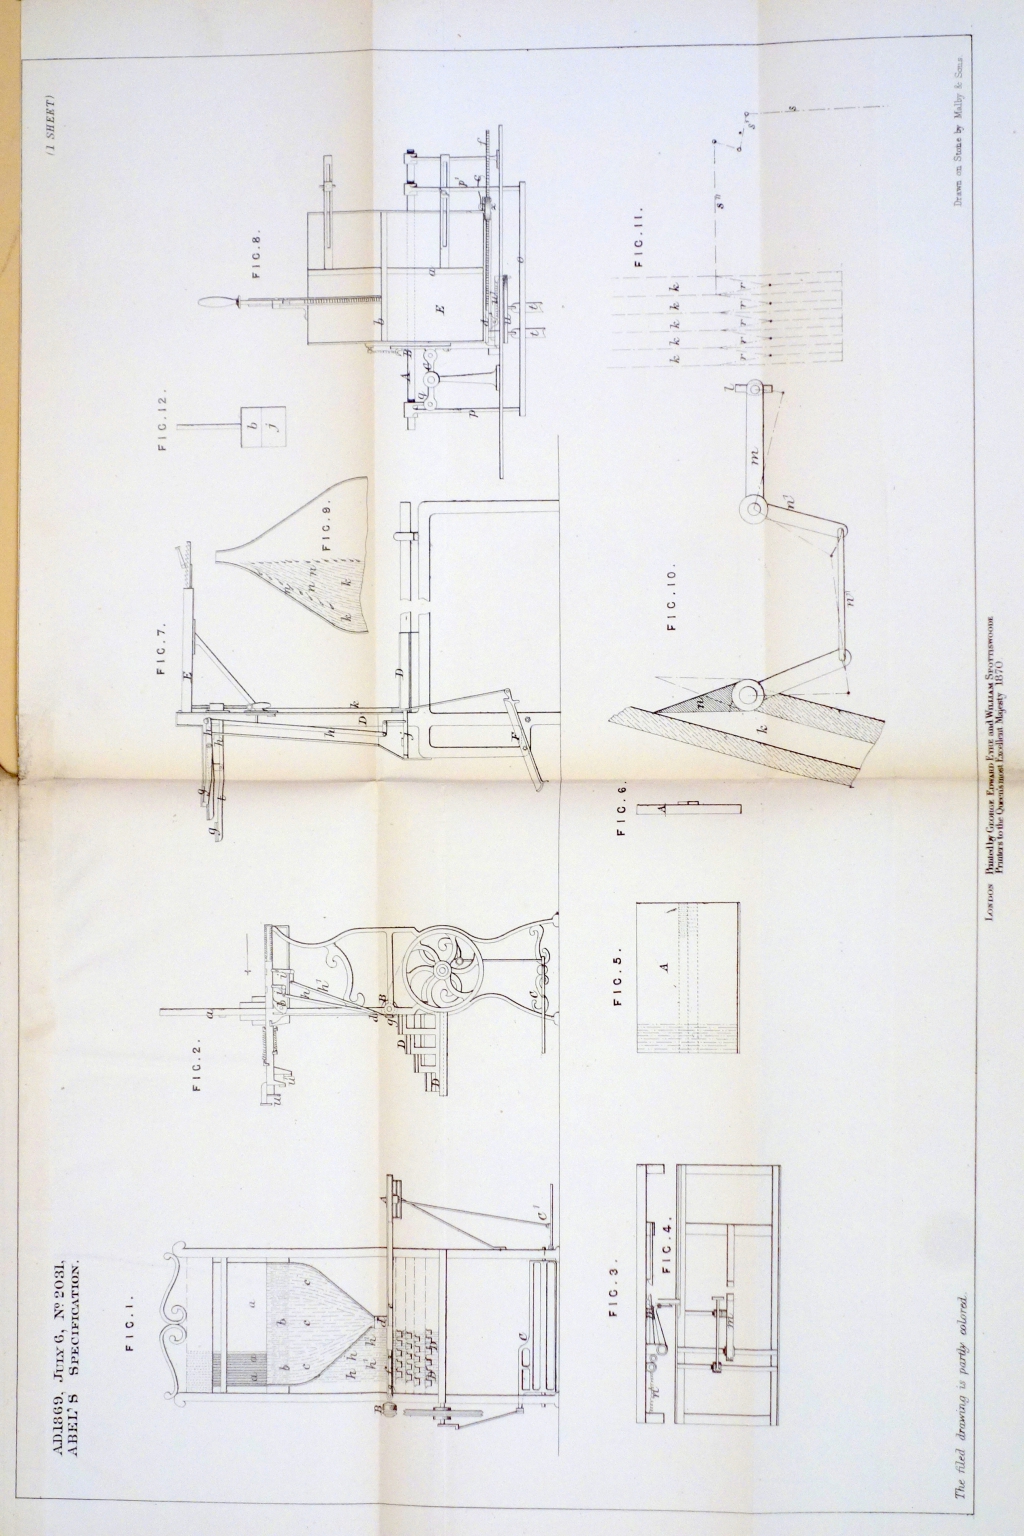 Kastenbein patent image